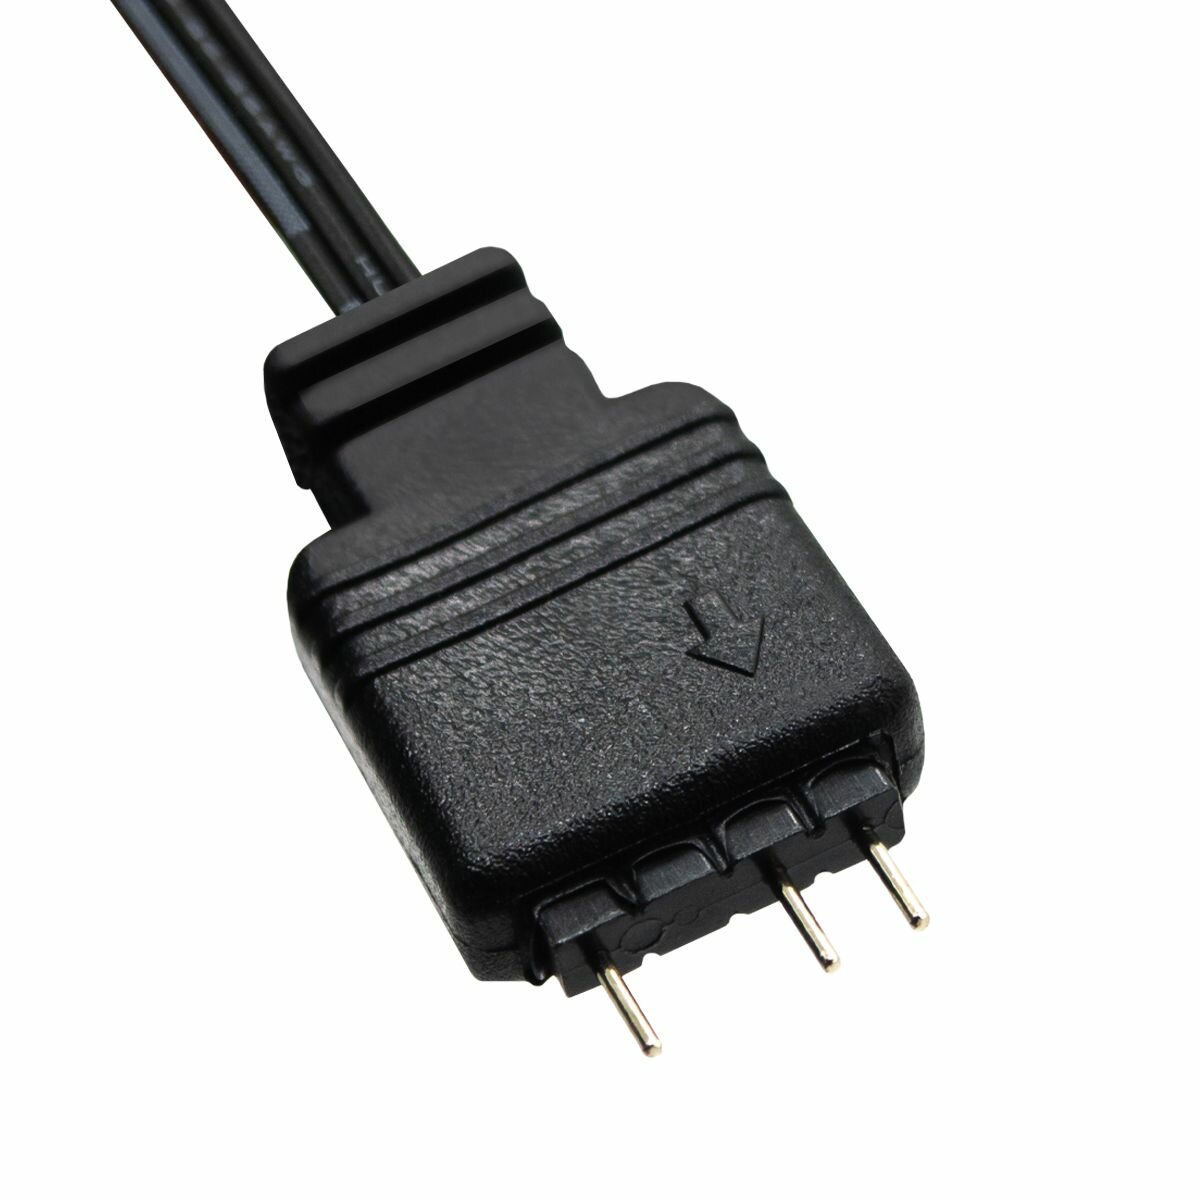 Сплиттер ARGB 4 разъема для ПК, кабель разветвитель на 3Pin для вентиляторов, светодиодных лент, держателей и др, удлинитель 30см, подключение 5v3Pin